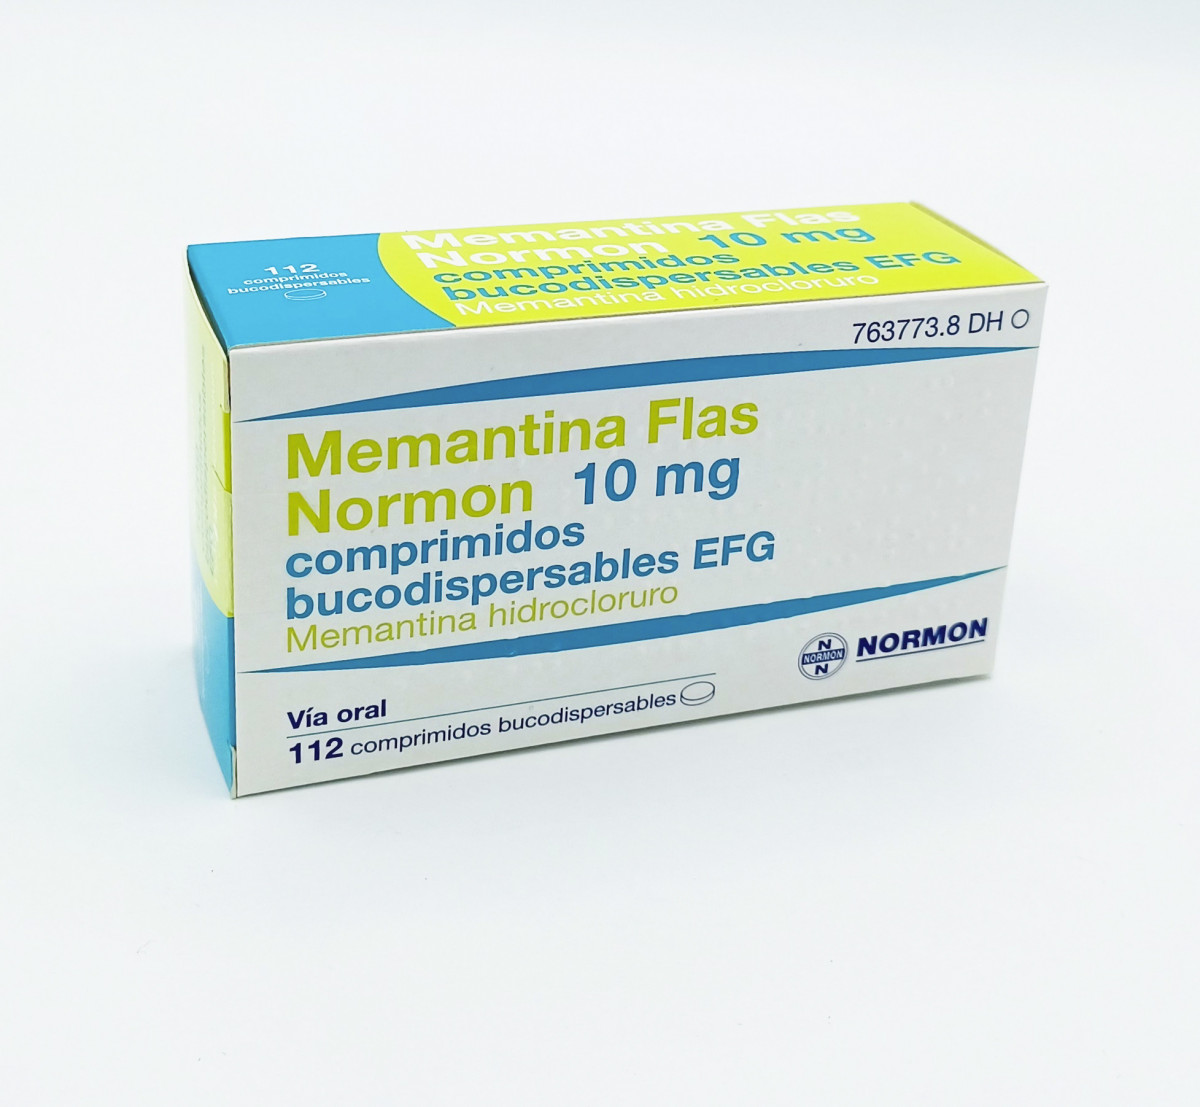 MEMANTINA FLAS NORMON 10 MG COMPRIMIDOS BUCODISPERSABLES EFG, 112 comprimidos fotografía del envase.